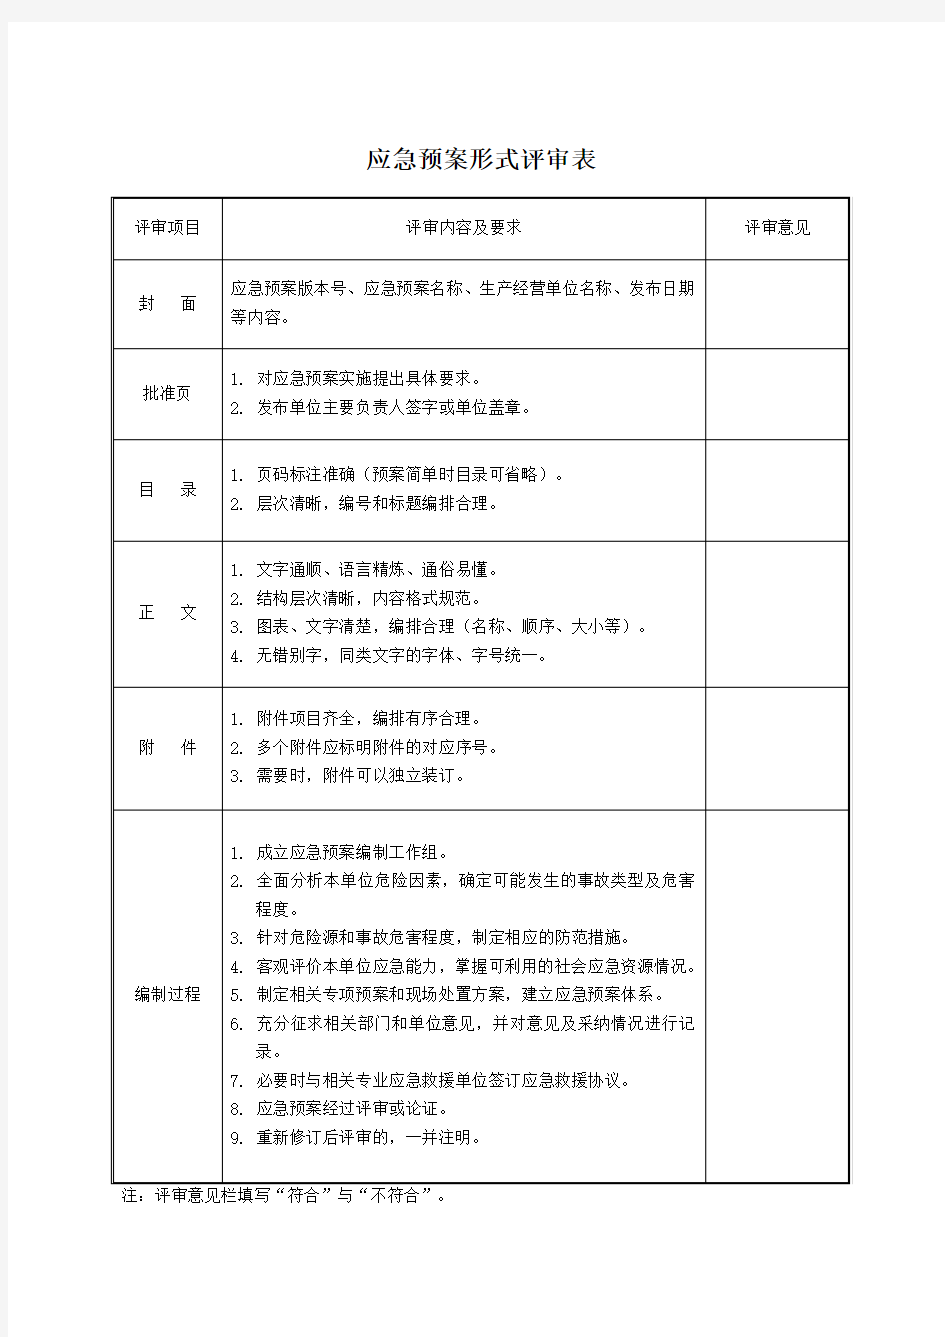 应急预案评审记录表(全) 2